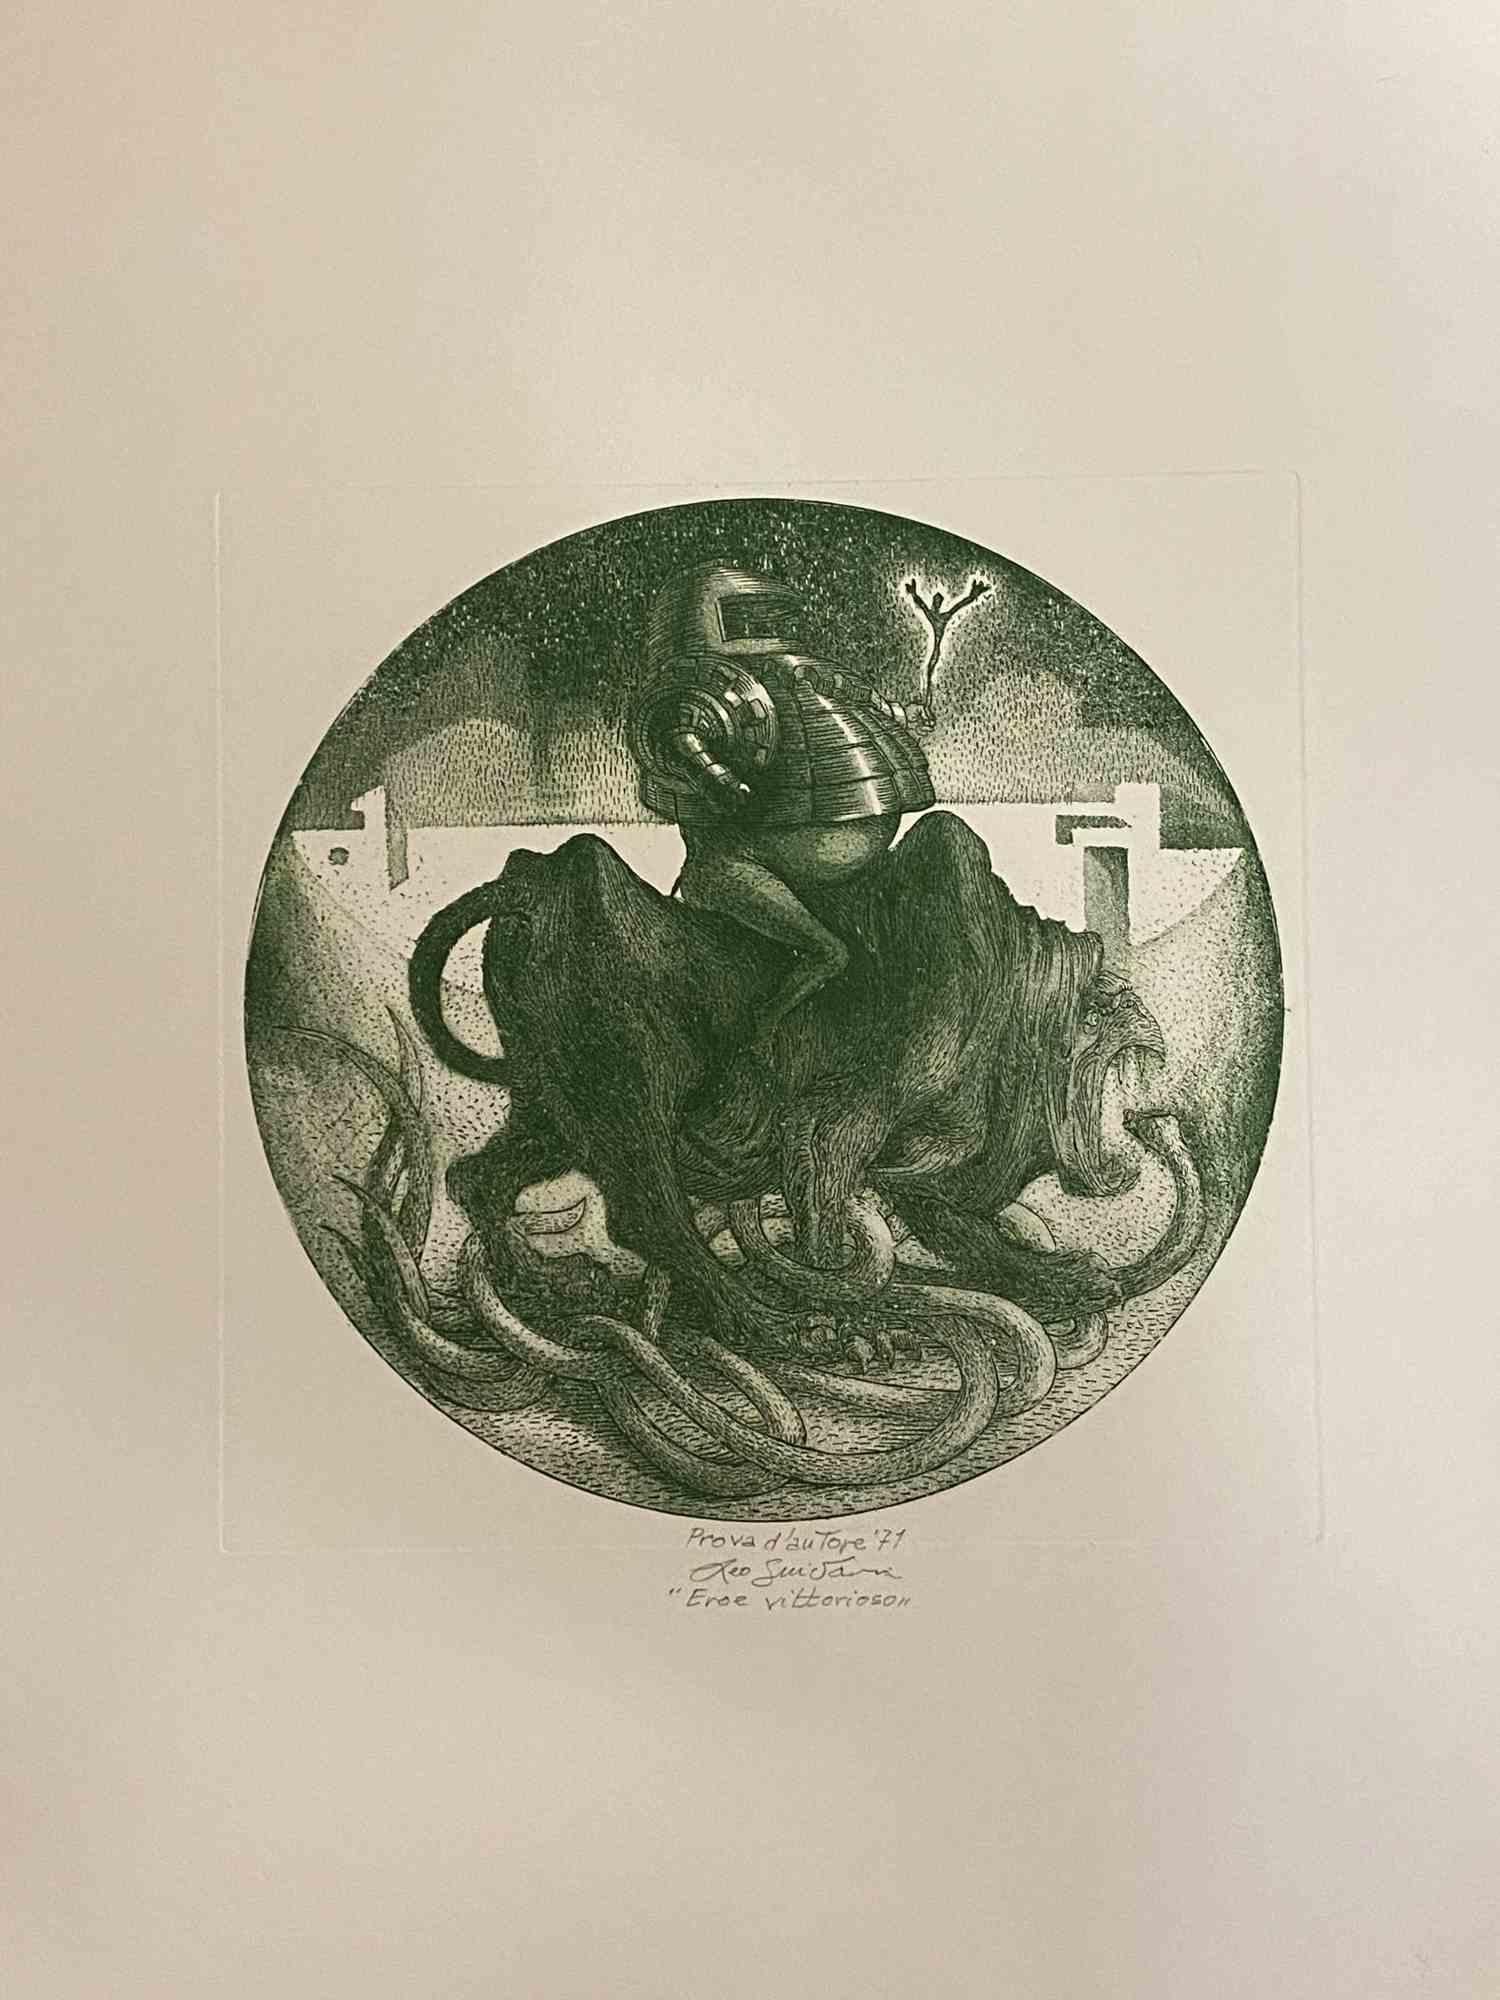 Winning Hero ist ein originalgetreues Kunstwerk  im Jahr 1971  von dem italienischen zeitgenössischen Künstler  Leo Guida  (1992 - 2017).

Farbige Originalradierung auf elfenbeinfarbenem Karton.
Am unteren Rand handsigniert und datiert. Kat. INV.C